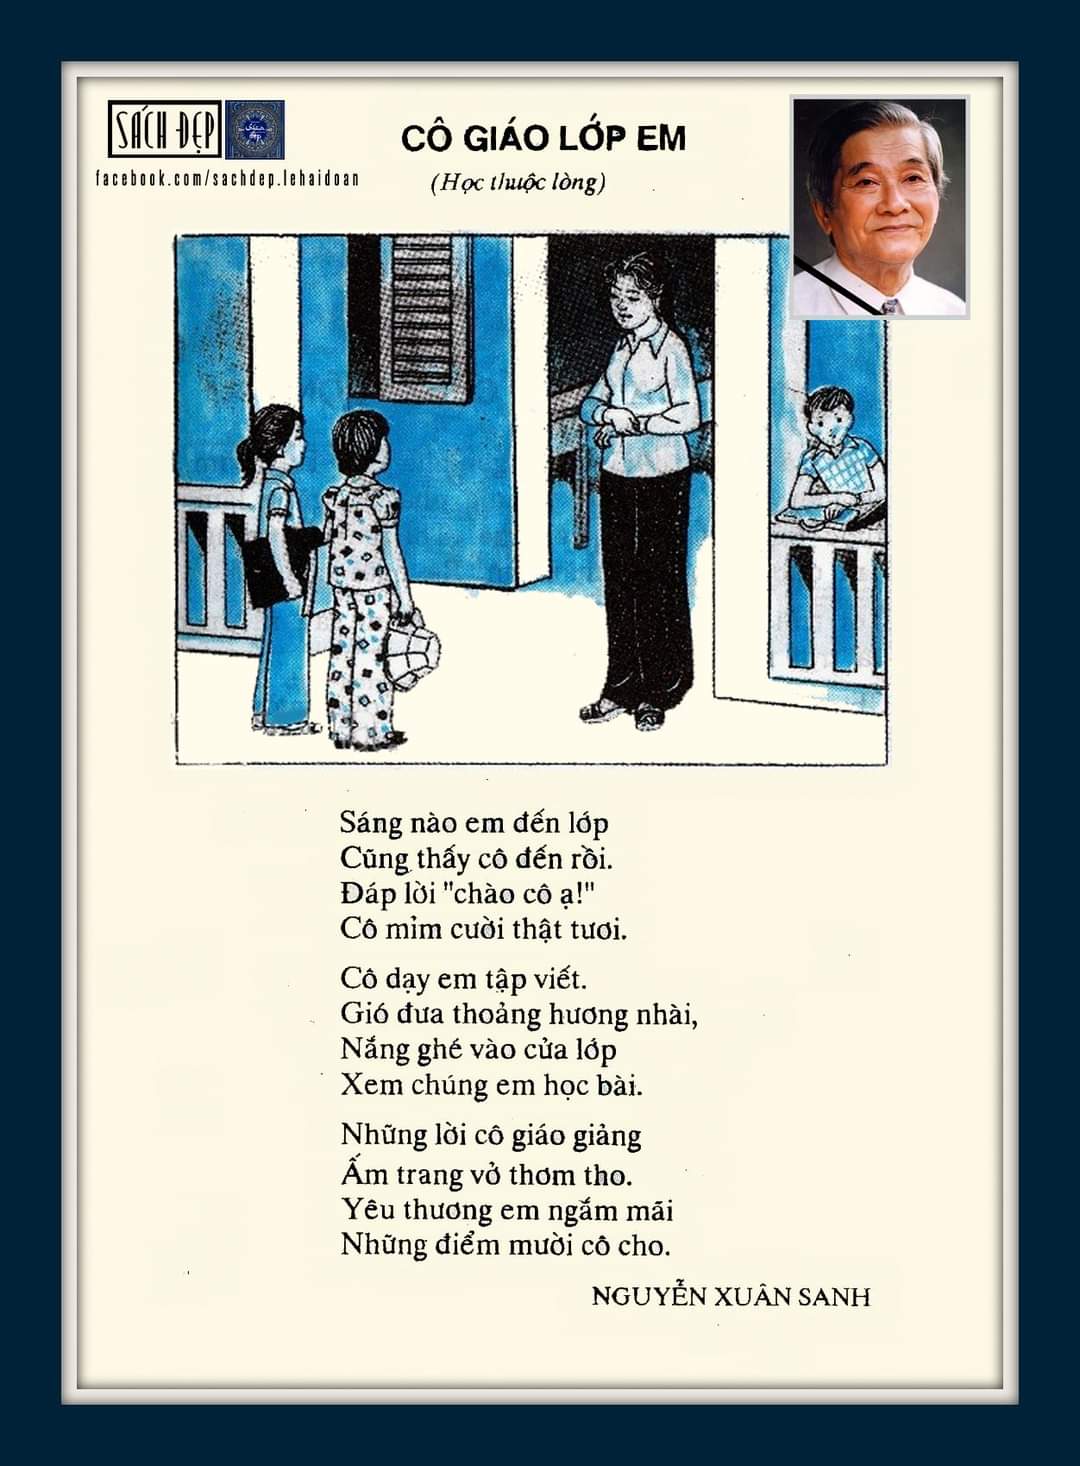 Tác giả Nguyễn Xuân Sanh ra đi, vần thơ \'Cô giáo lớp em\' vẫn sống mãi